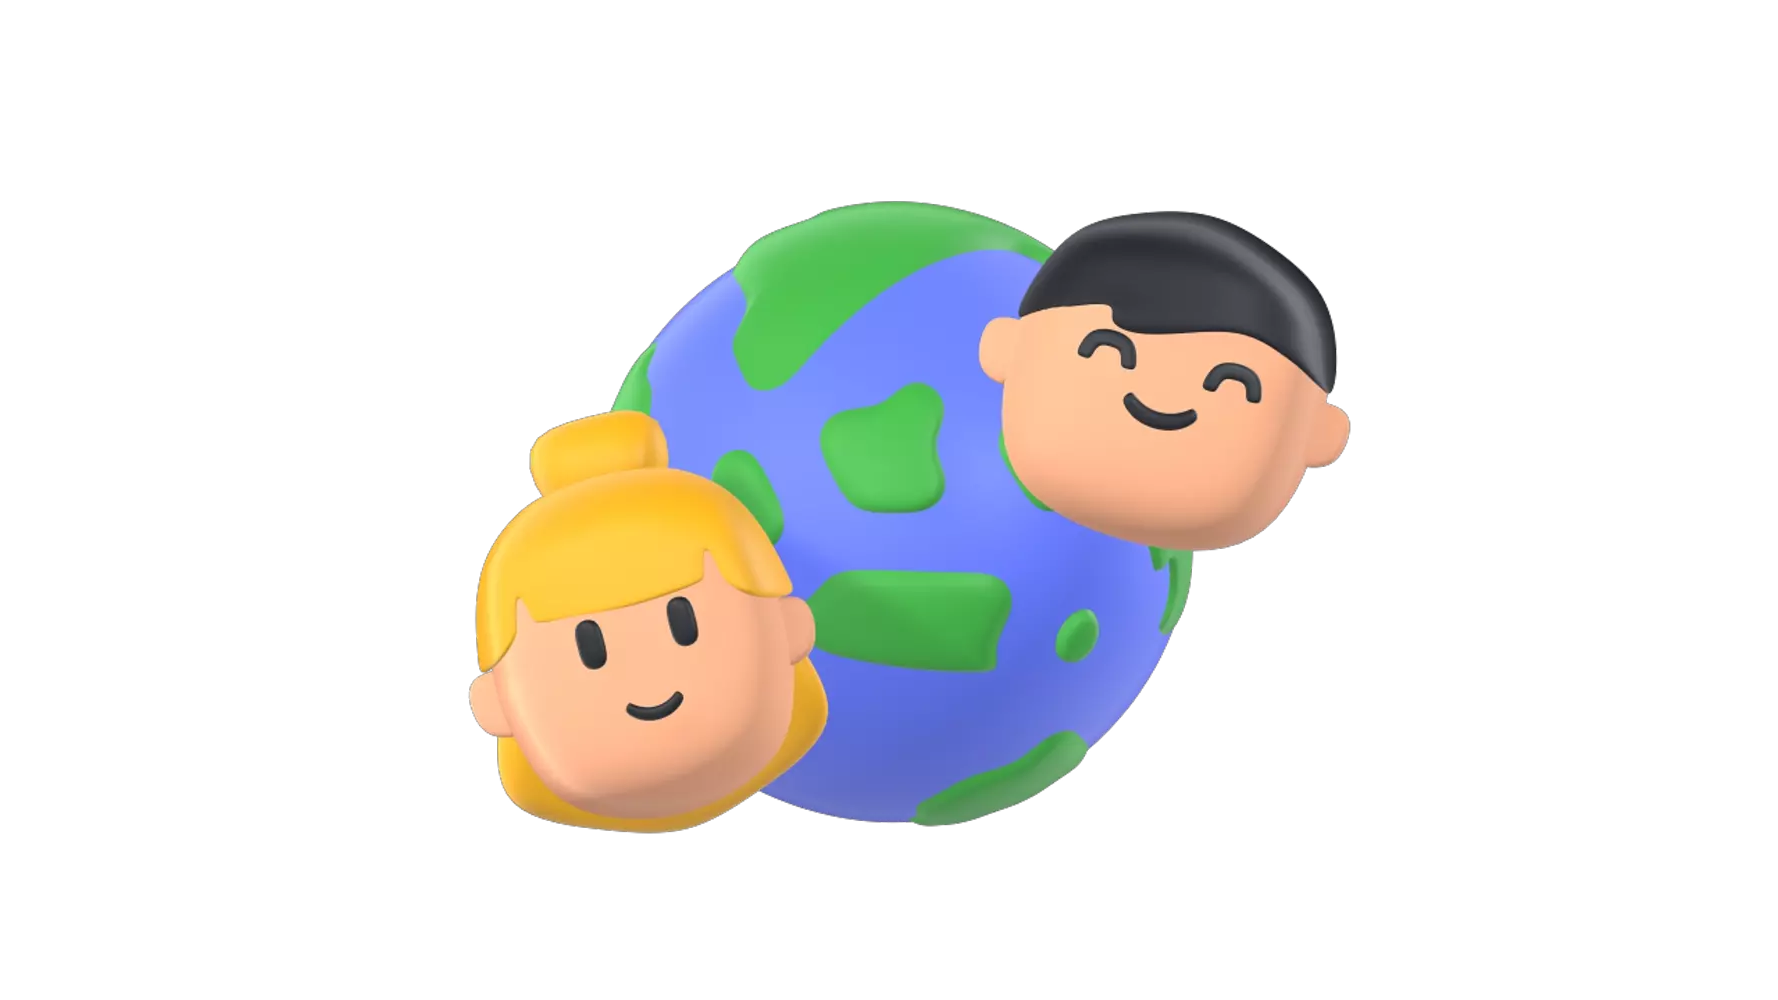 Friendship World 3D Graphic